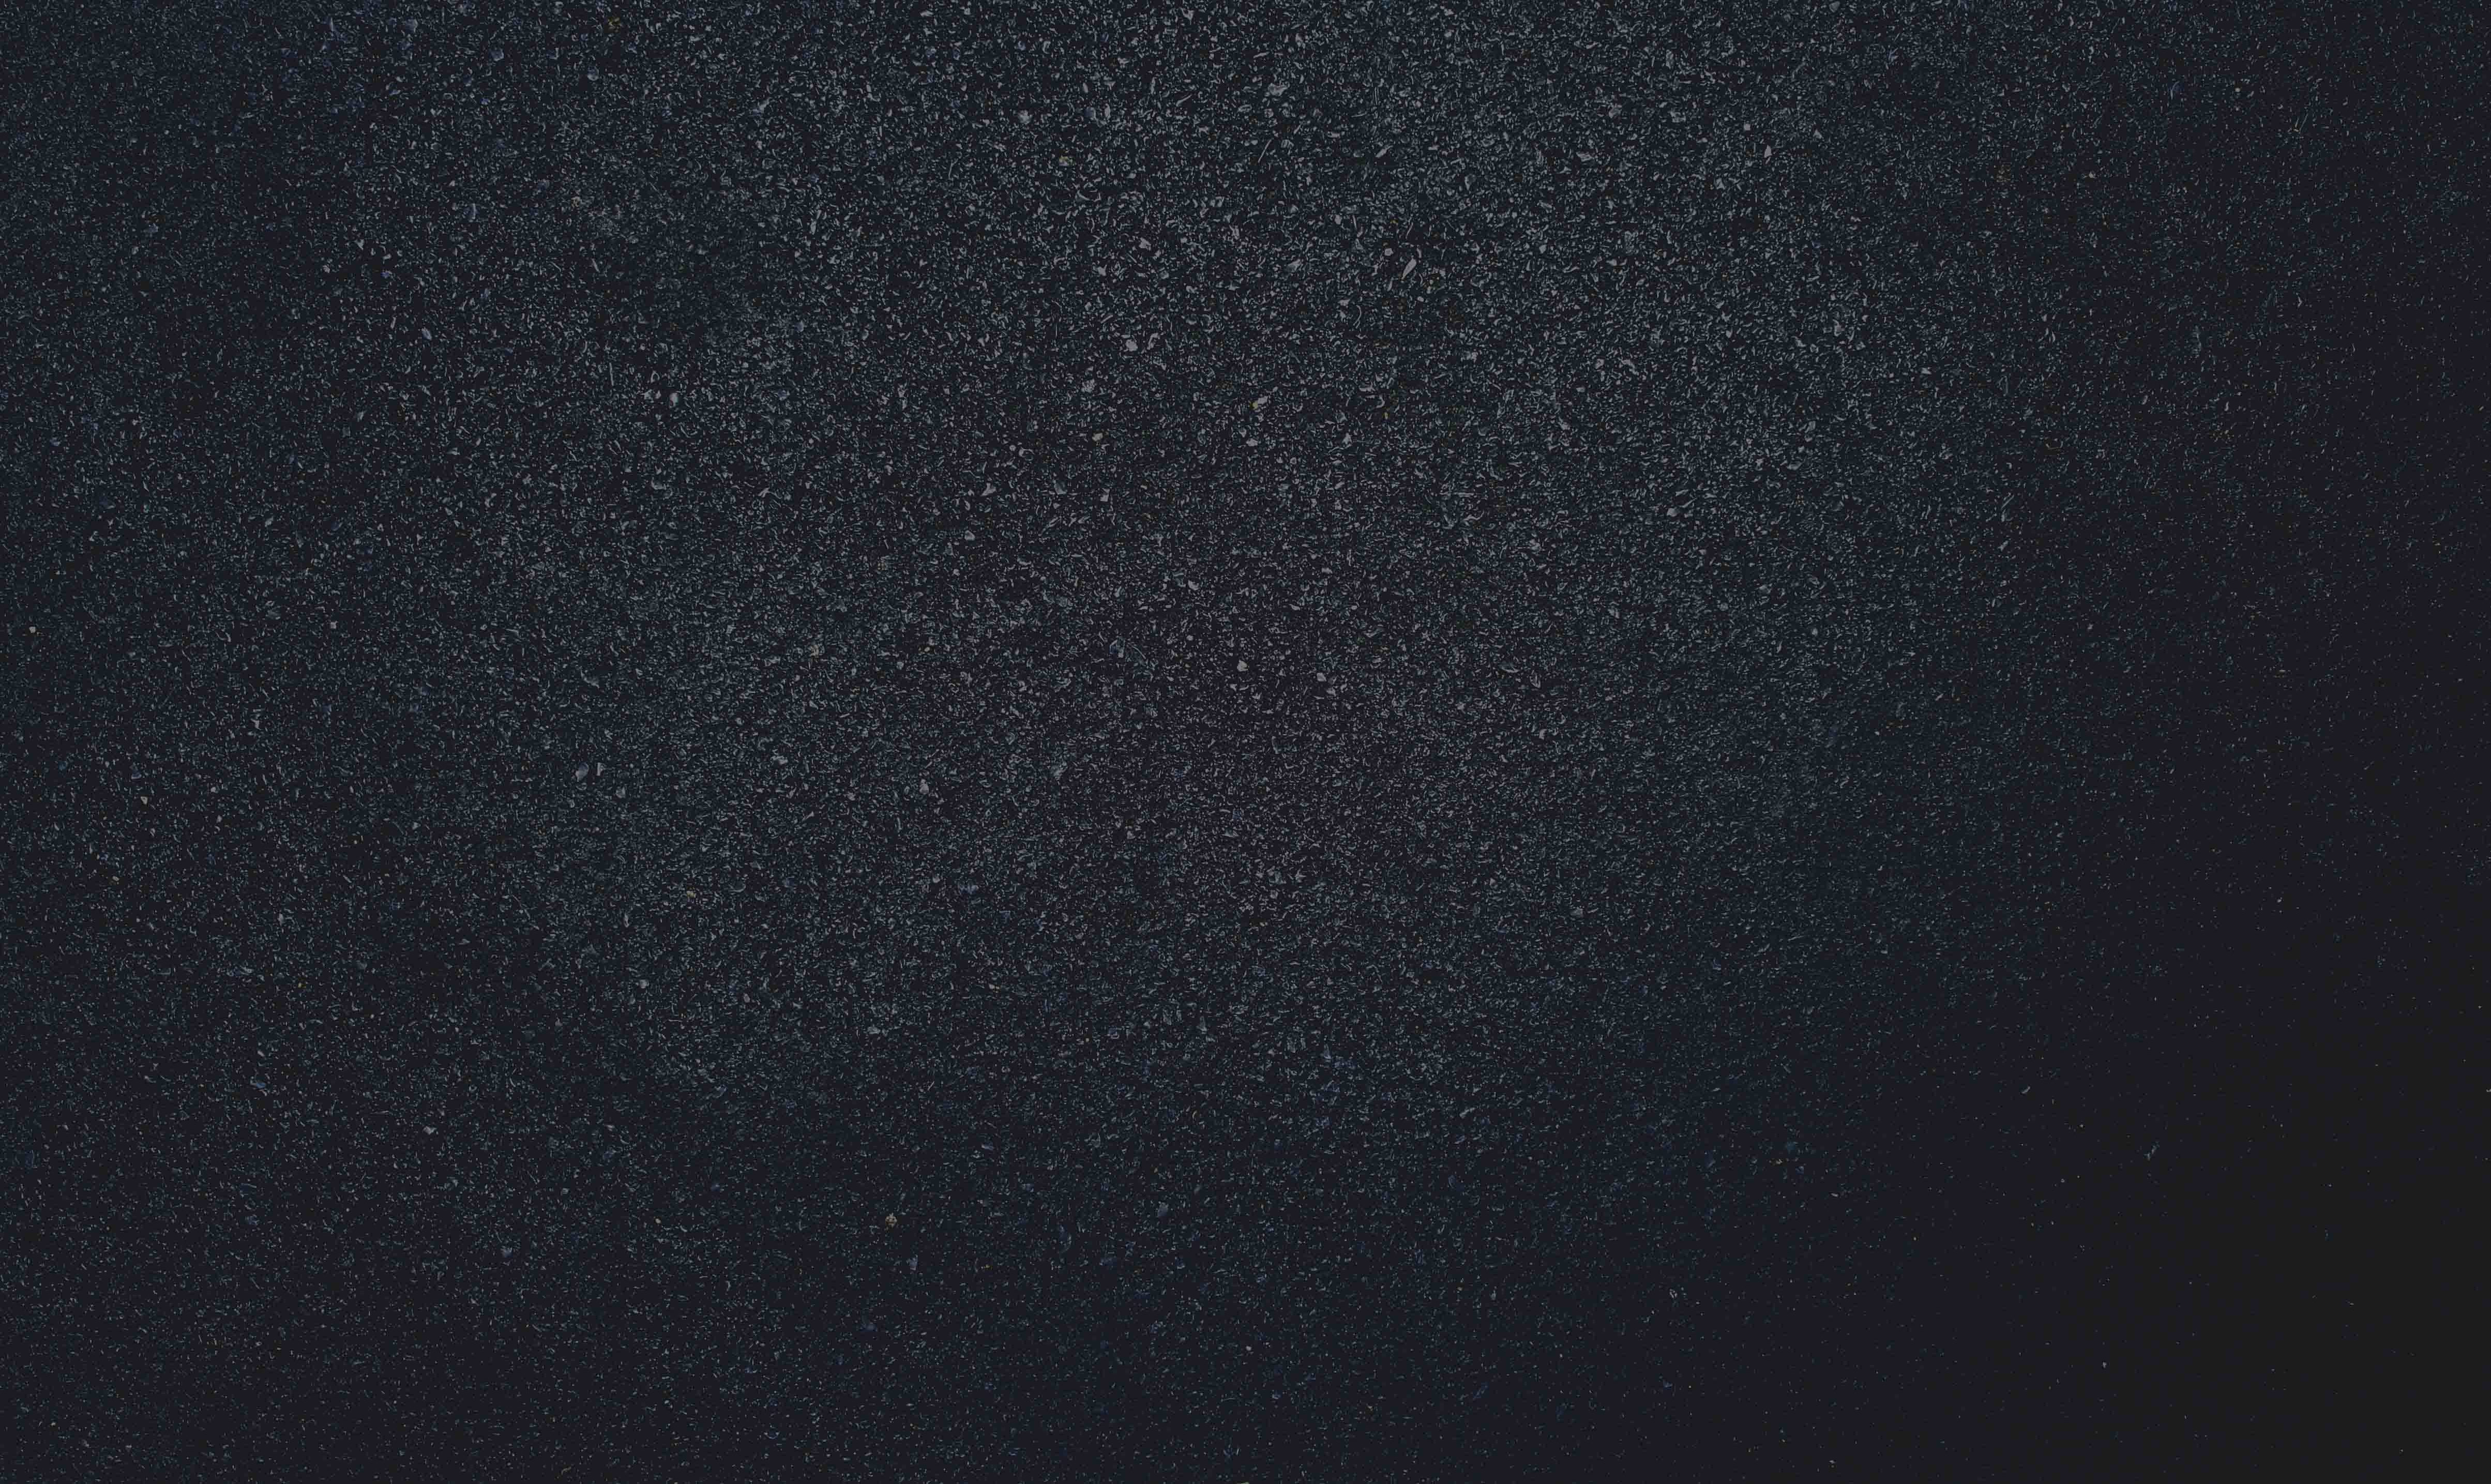 Dark asphalt texture powerpoint template picture #2325 - Slide Background